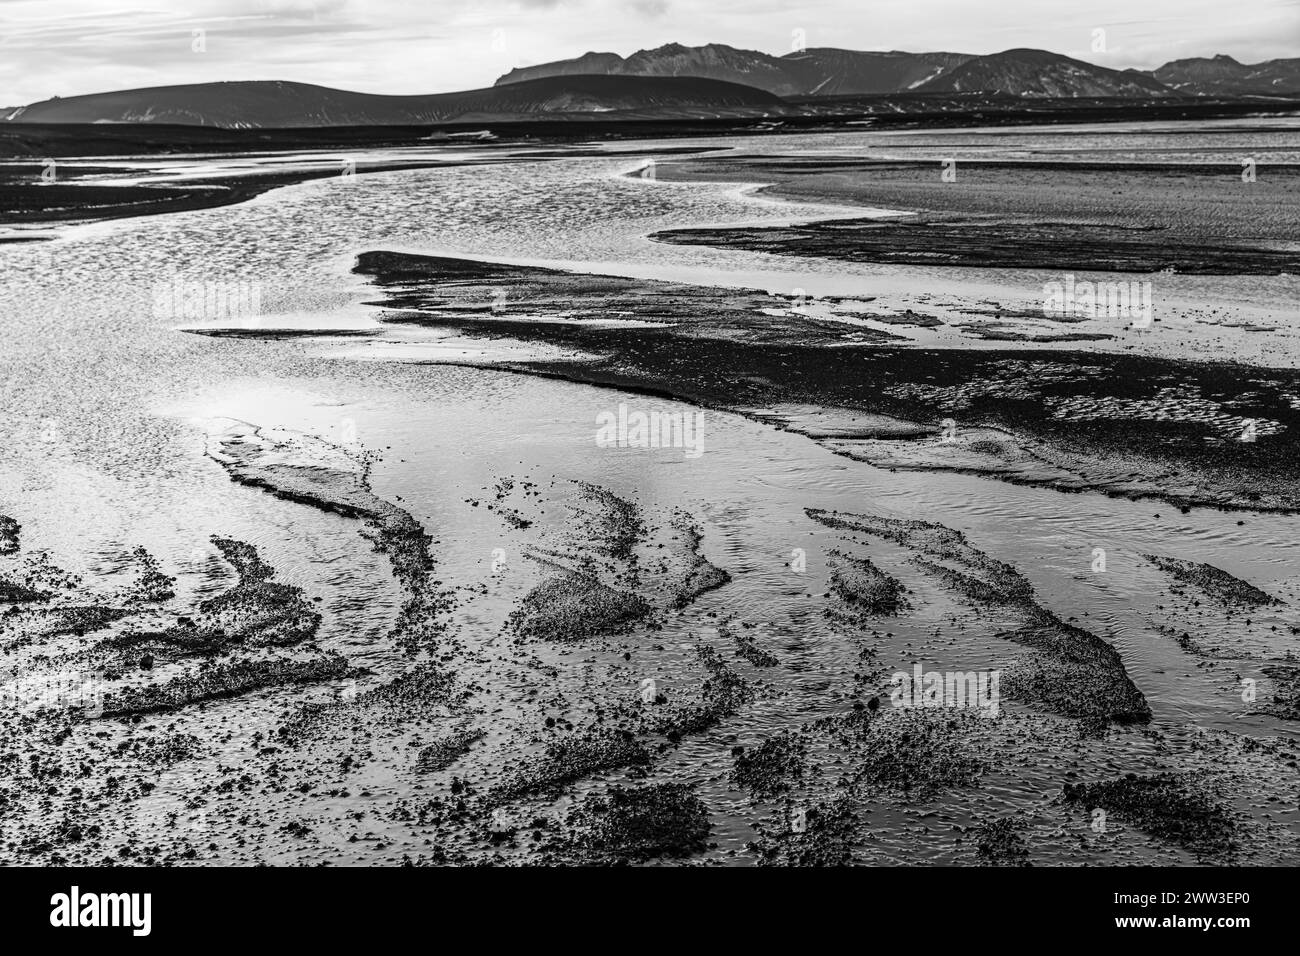 Paysage fluvial envahi par la végétation, photographie en noir et blanc, réserve naturelle de Fjallabak, Sudurland, Islande Banque D'Images